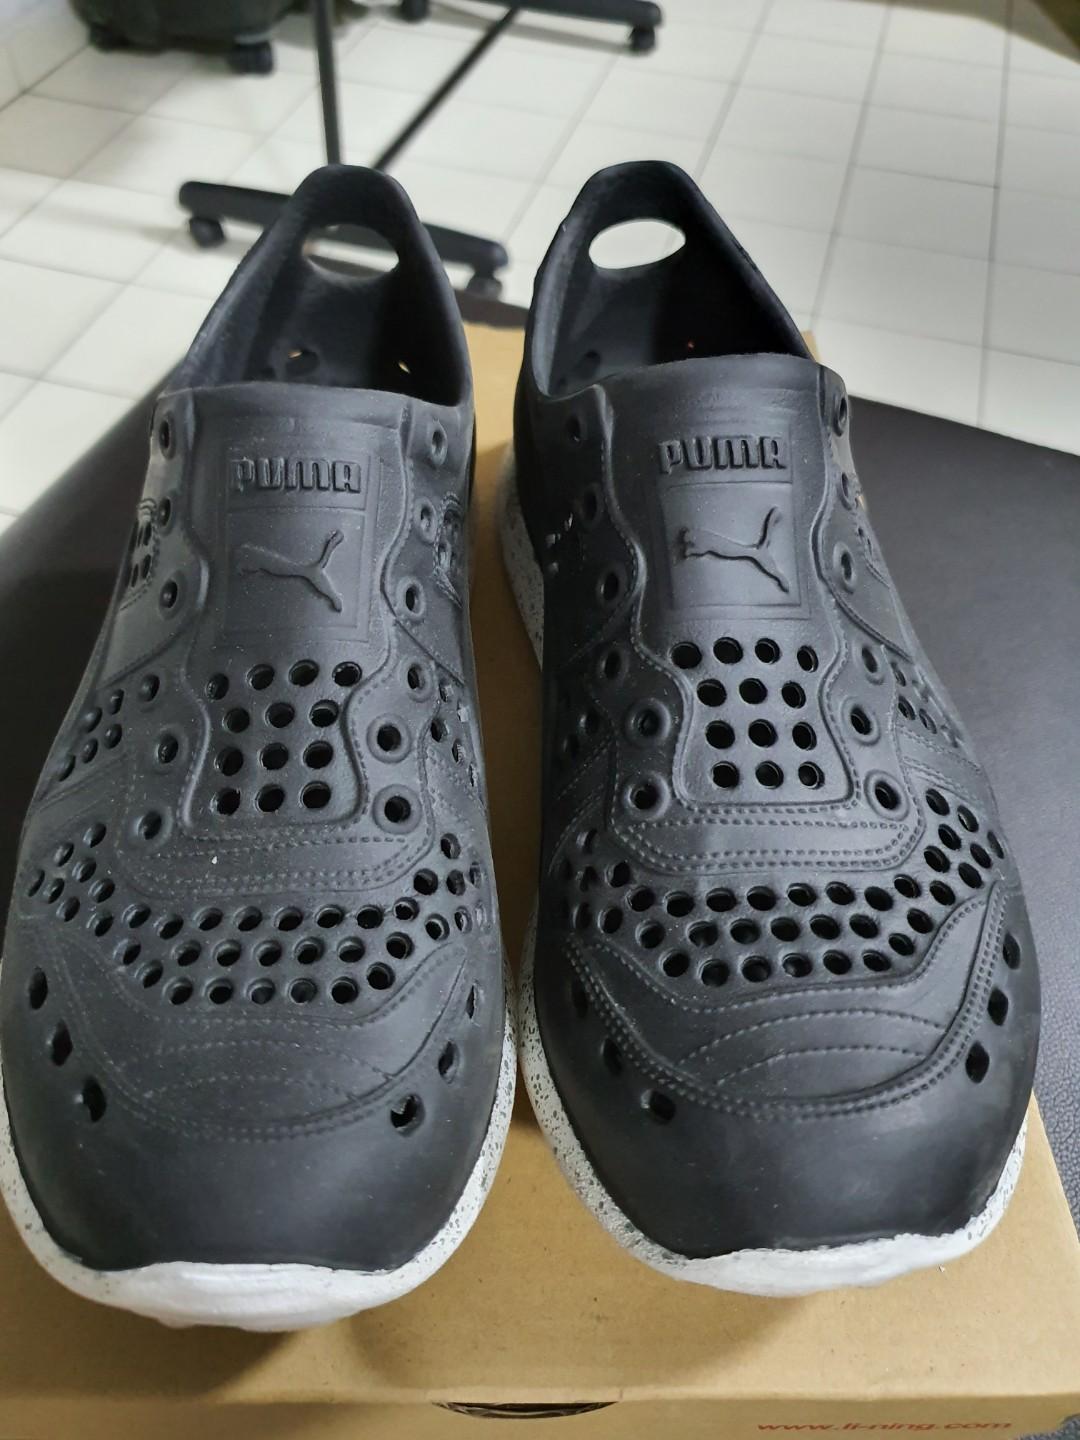 puma rubber shoes